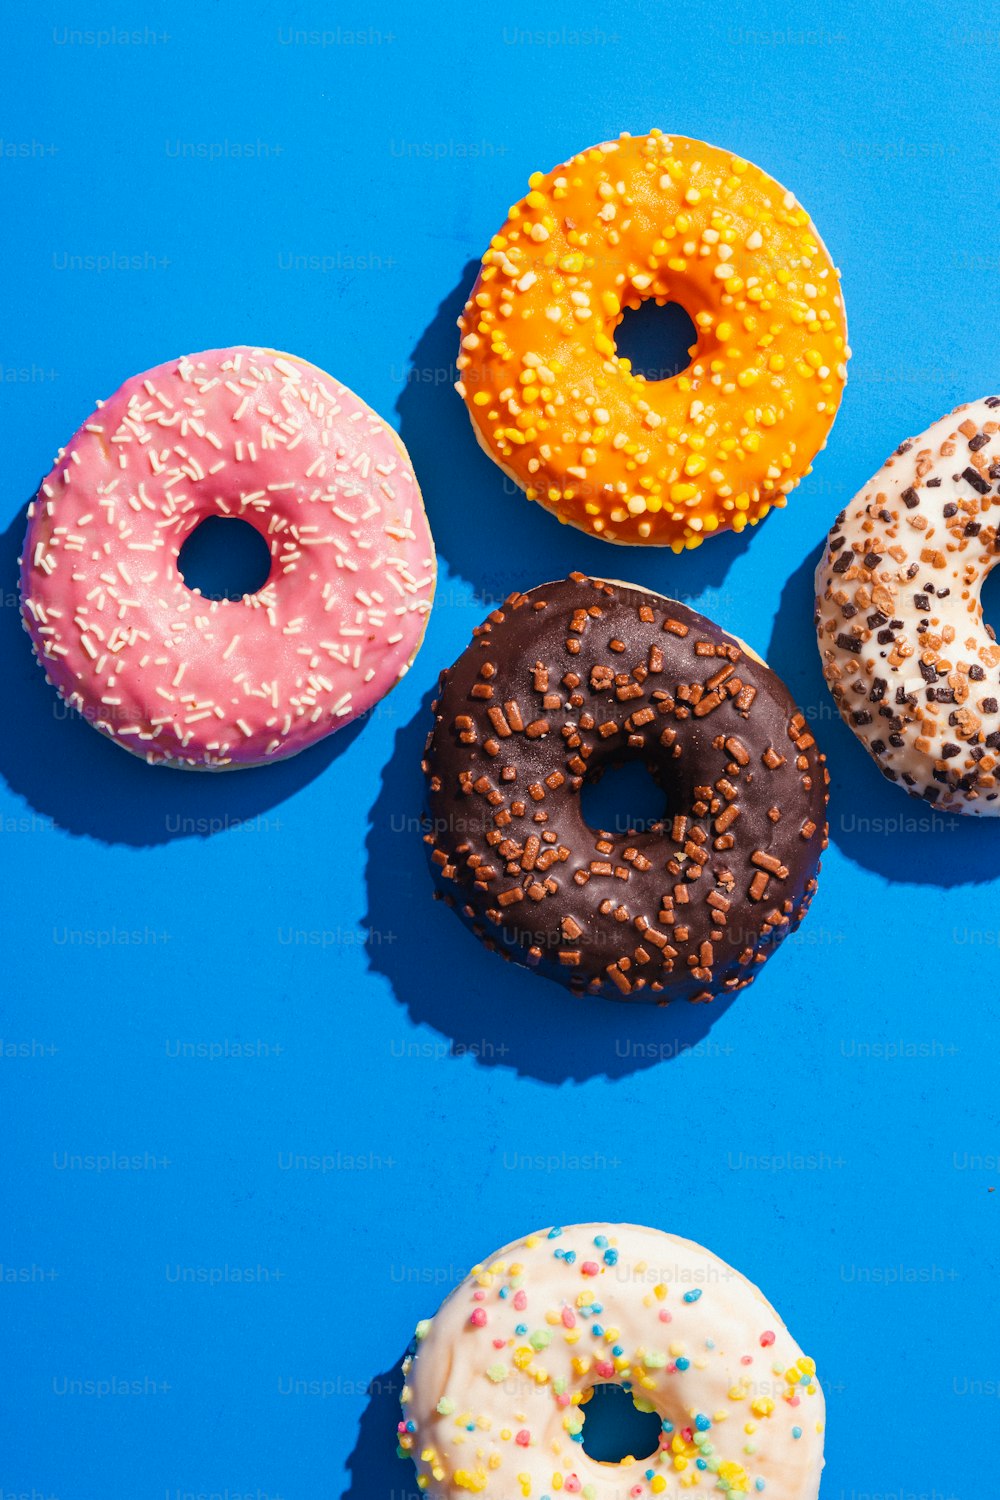 파란색 표면 위에 앉아 있는 네 개의 도넛 그룹